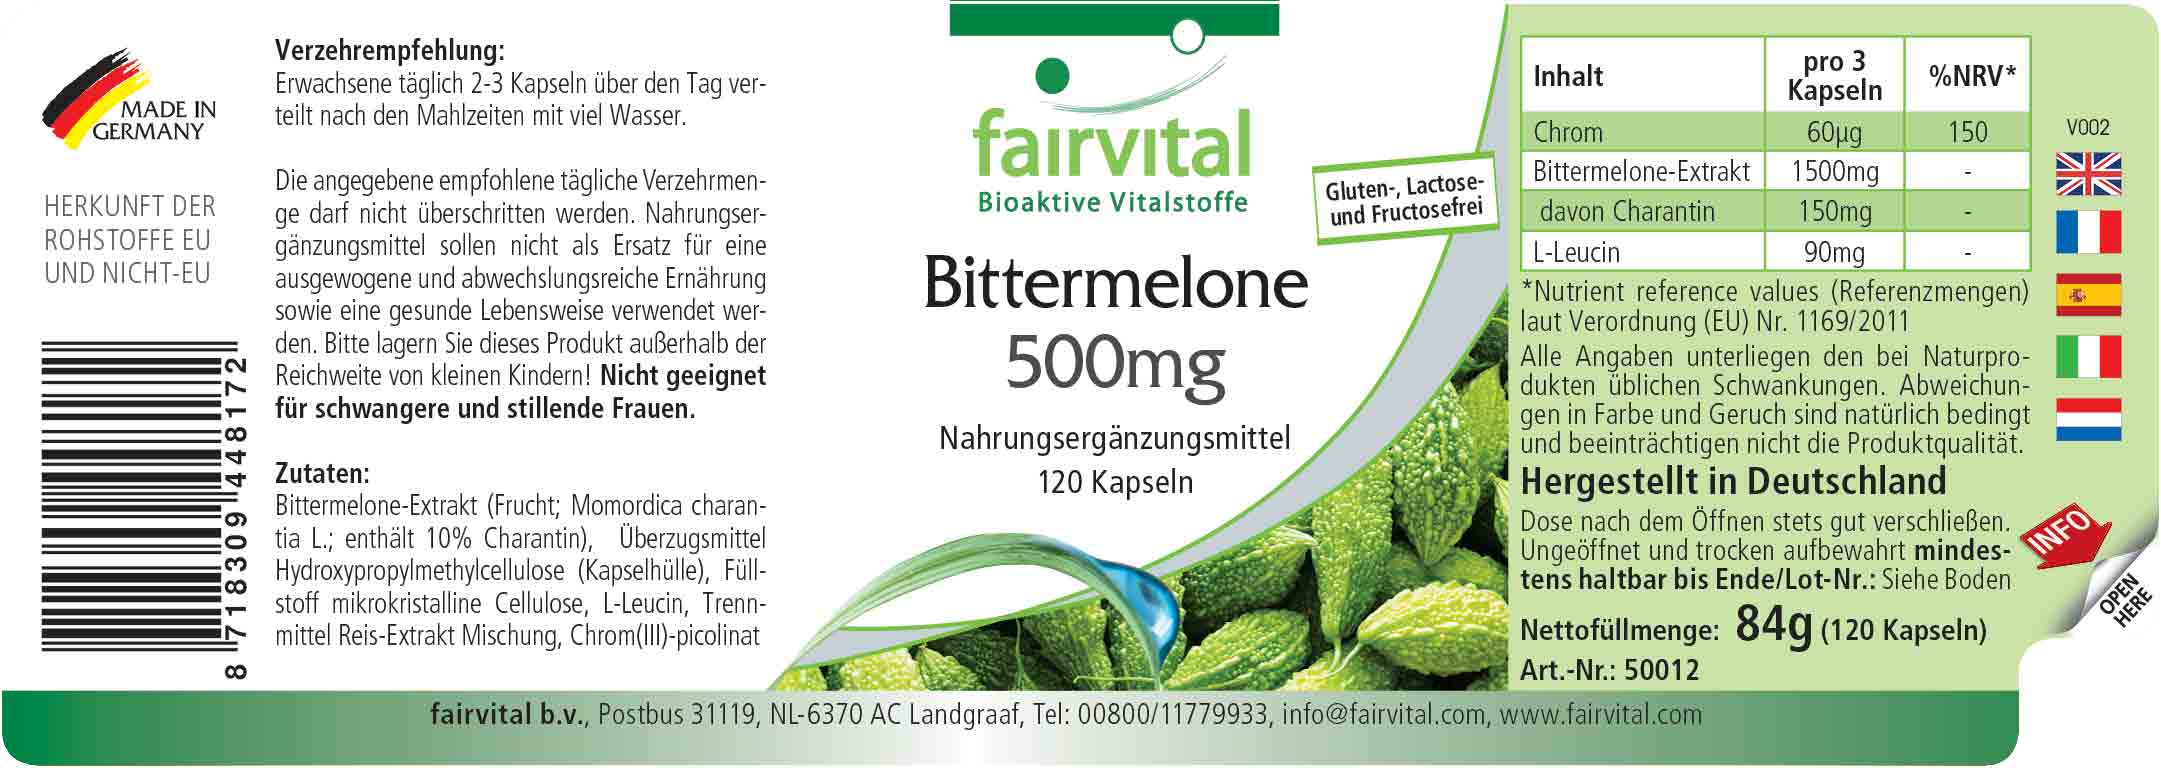 Bittermelone 500mg mit Chrom - 120 Kapseln - Sale - MHD 05/25